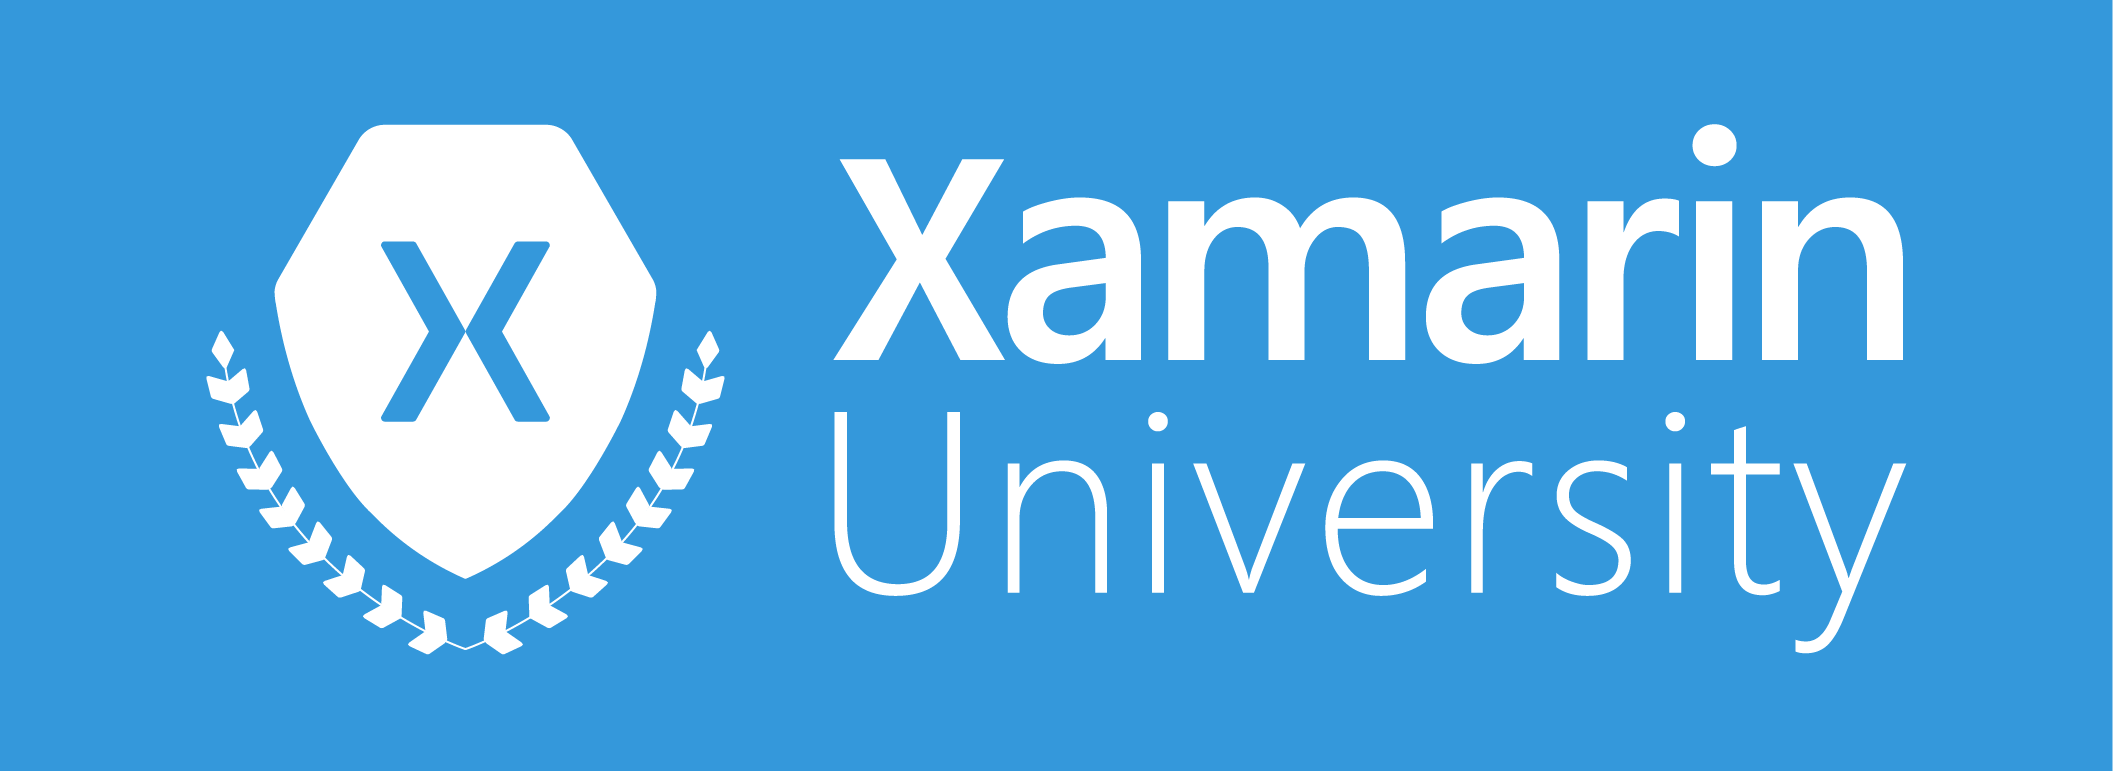 Xamarin University Logo